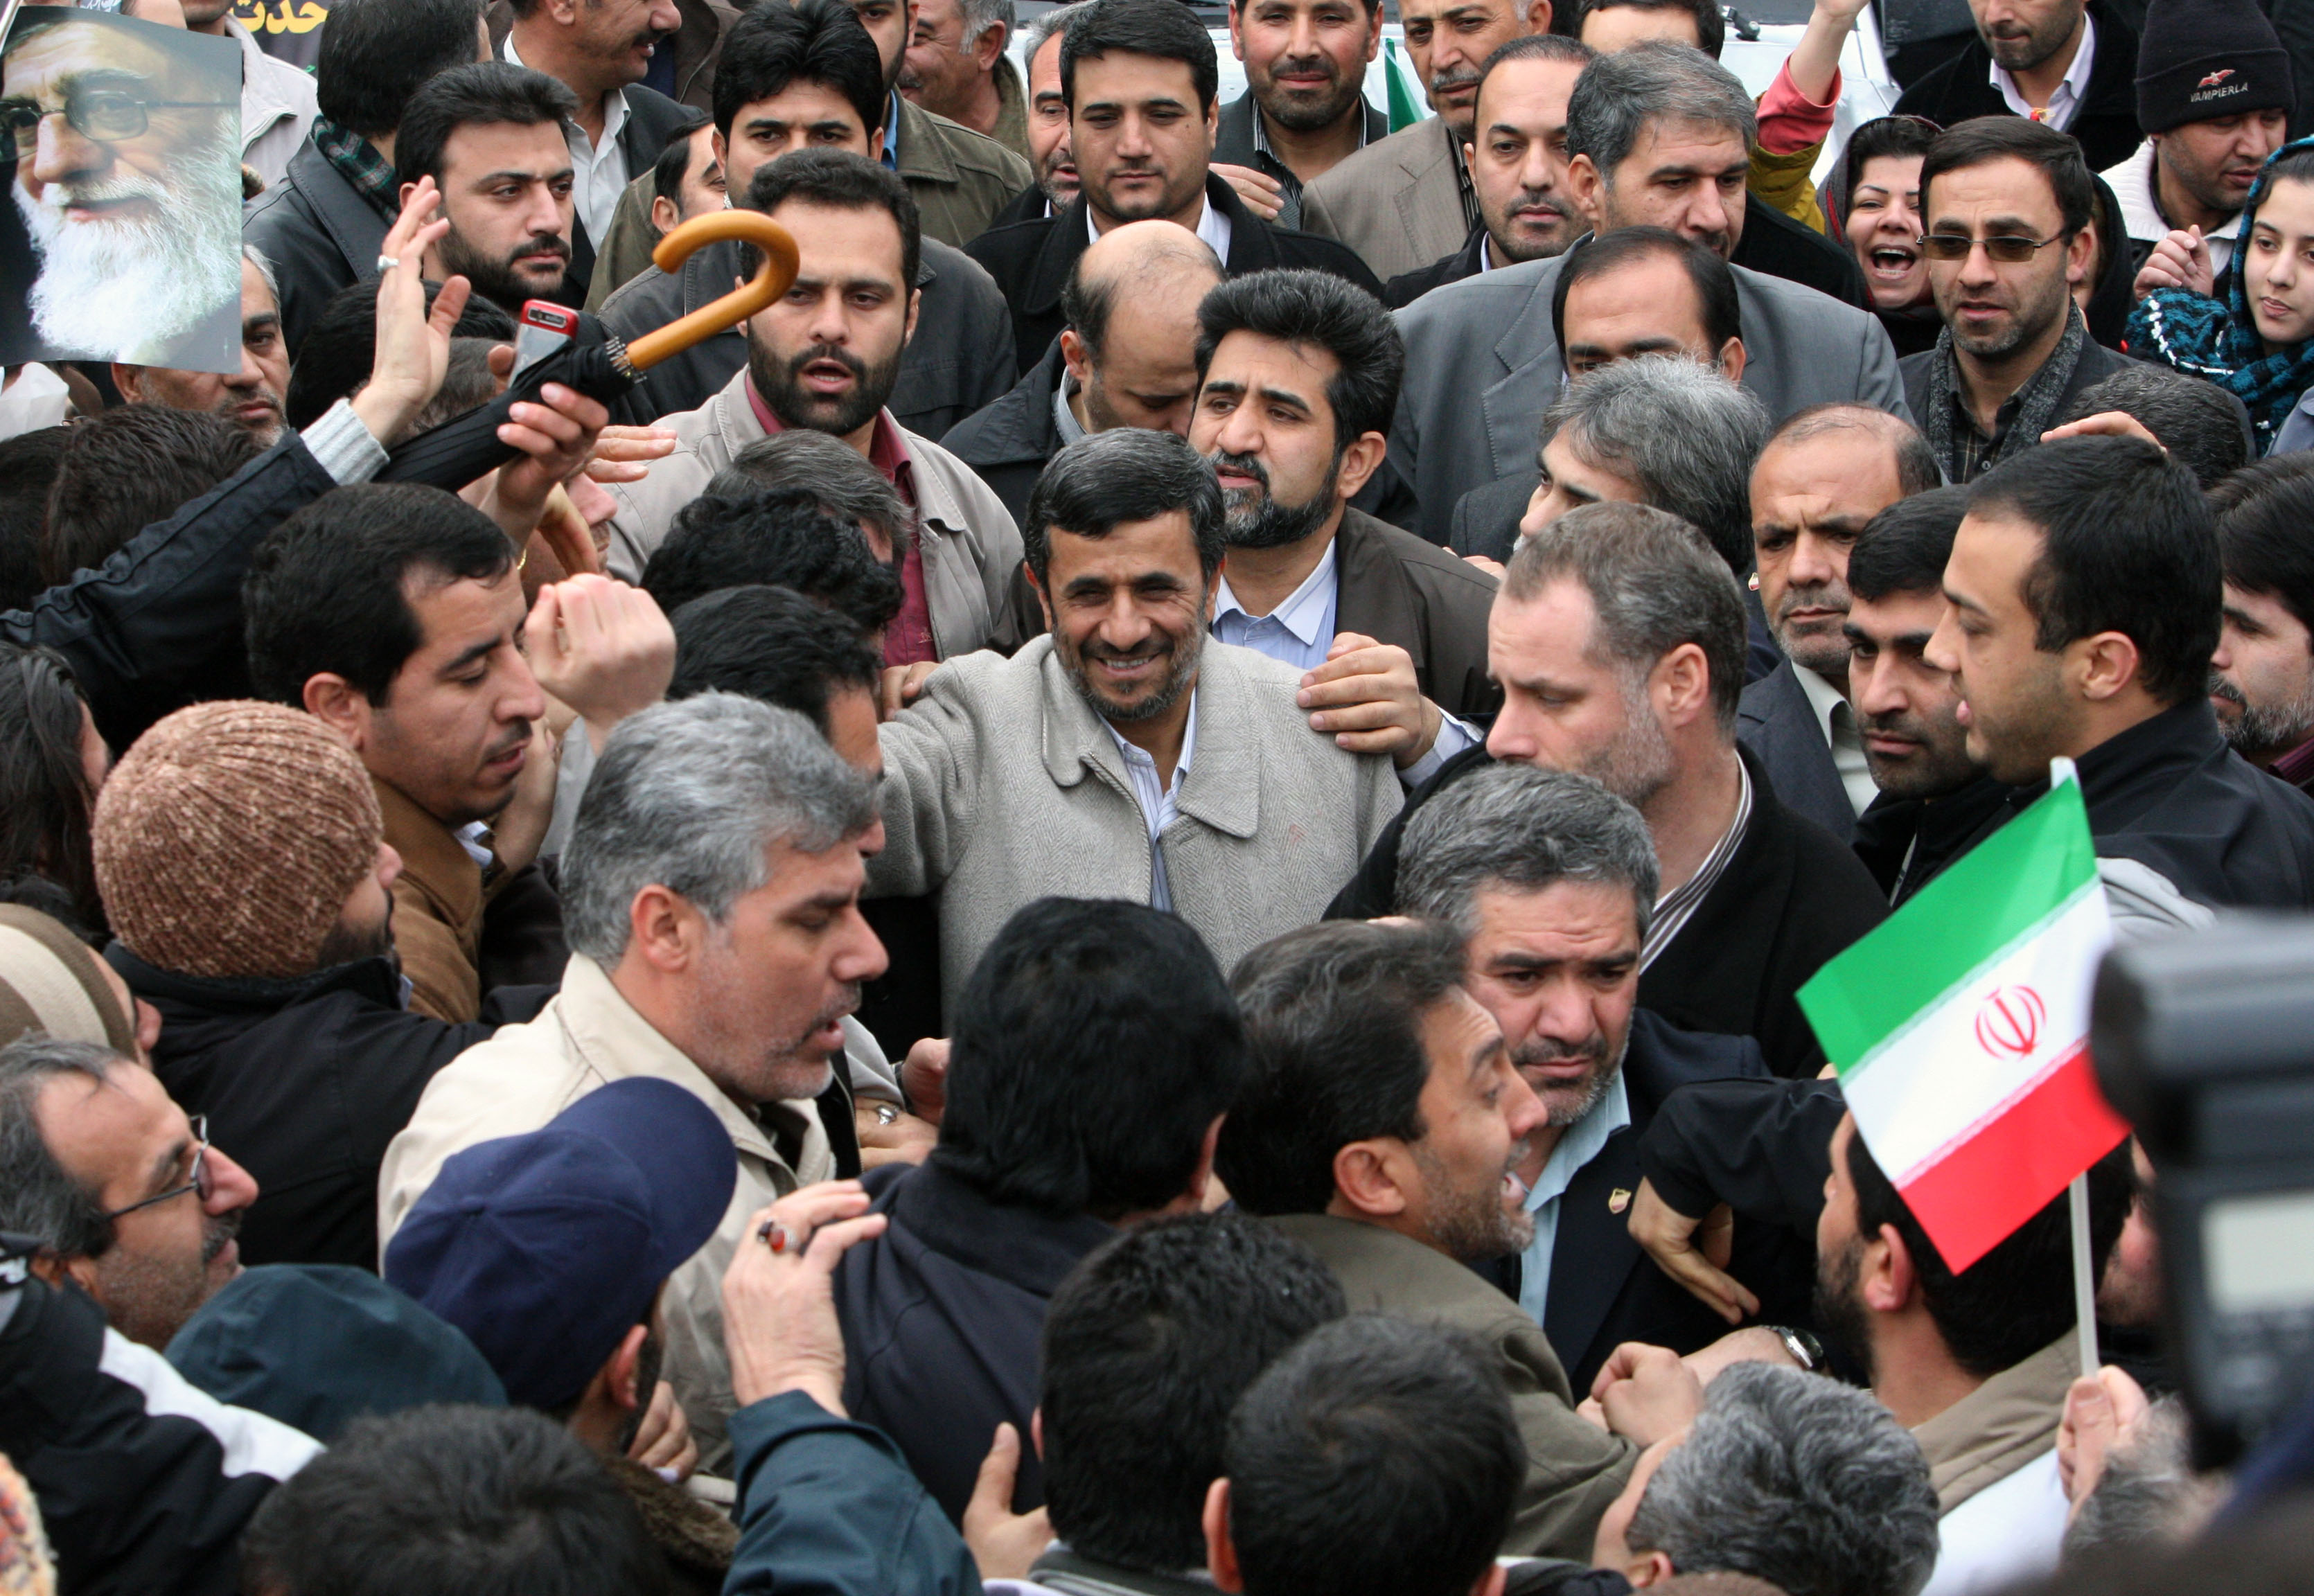 Valet 2009 misstänks däremot av Gröna rörelsen-aktivister för att vara riggat. 
Här ses Mahmoud Ahmadinejad bland sina anhängare vid det årliga firandet av den iranska revolutionen.